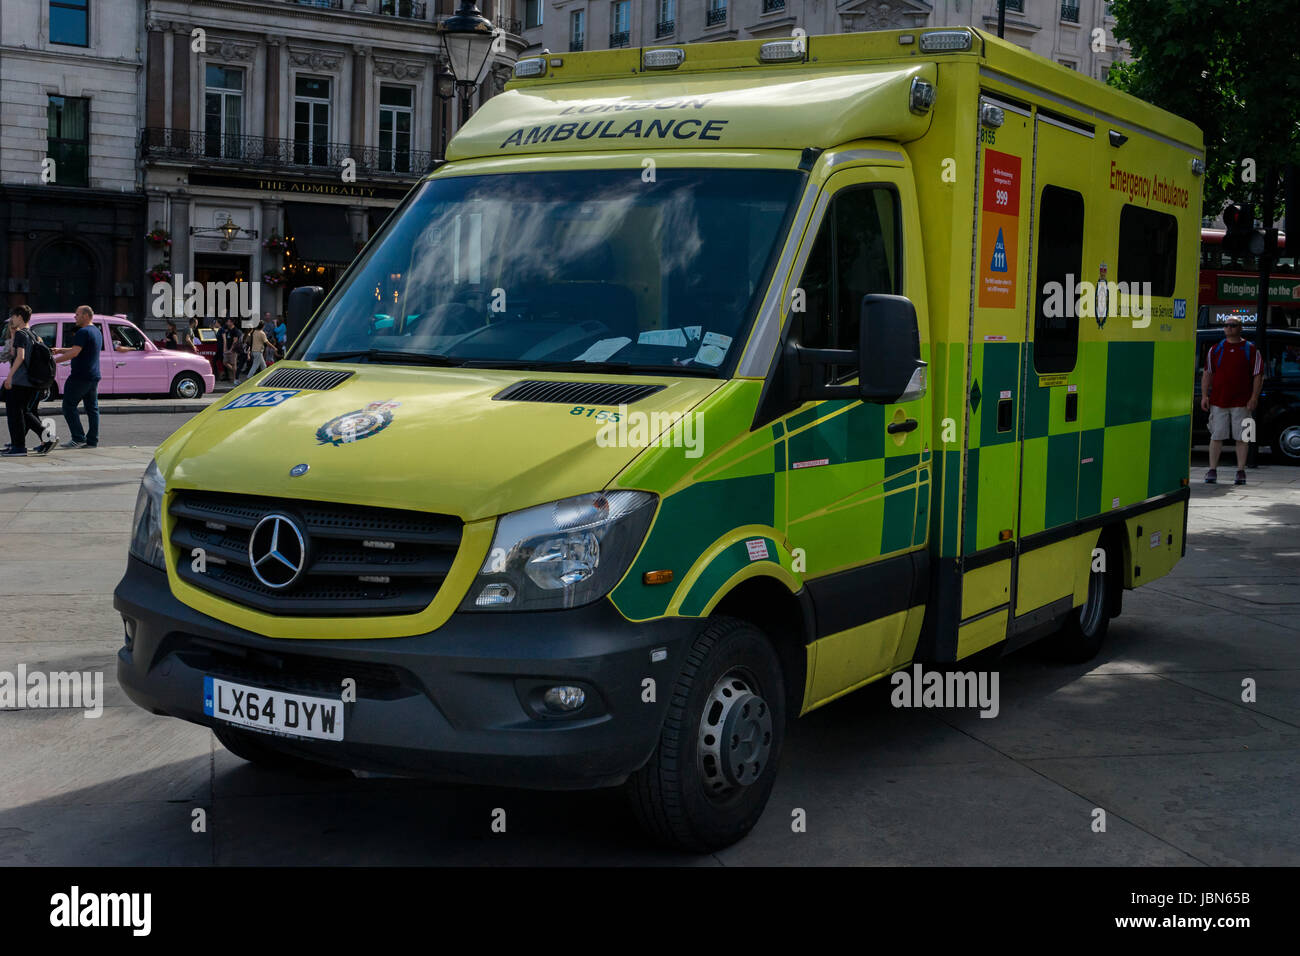 Emergency Ambulance, London, United Kingdom Stock Photo